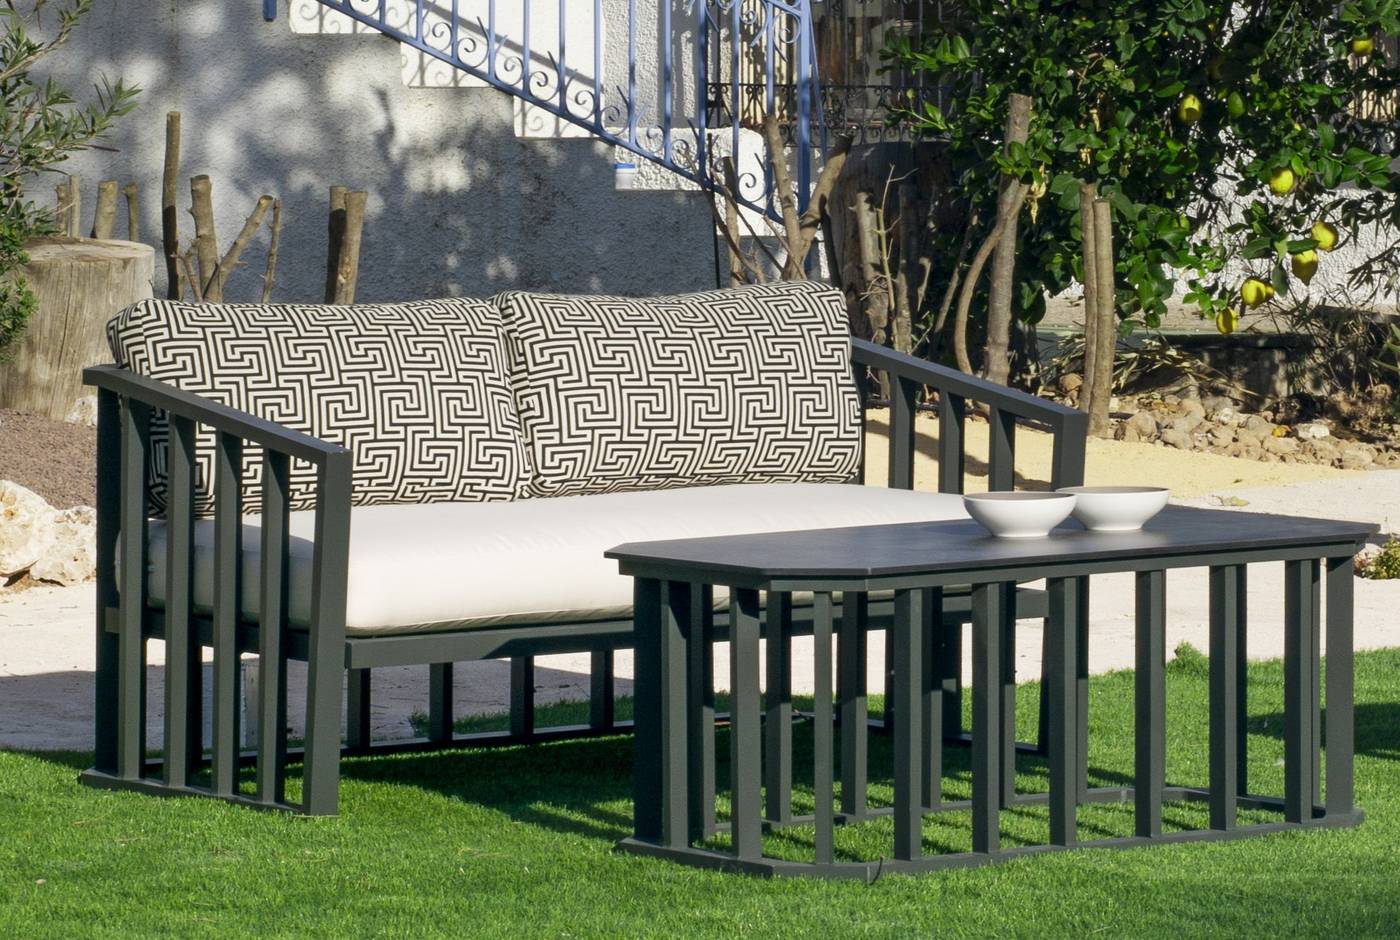 Set Aluminio Birmania-7 - Conjunto confort aluminio: 1 sofá 2 plazas + 2 sillones + 1 mesa de centro + cojines. Disponible en color blanco o antracita.